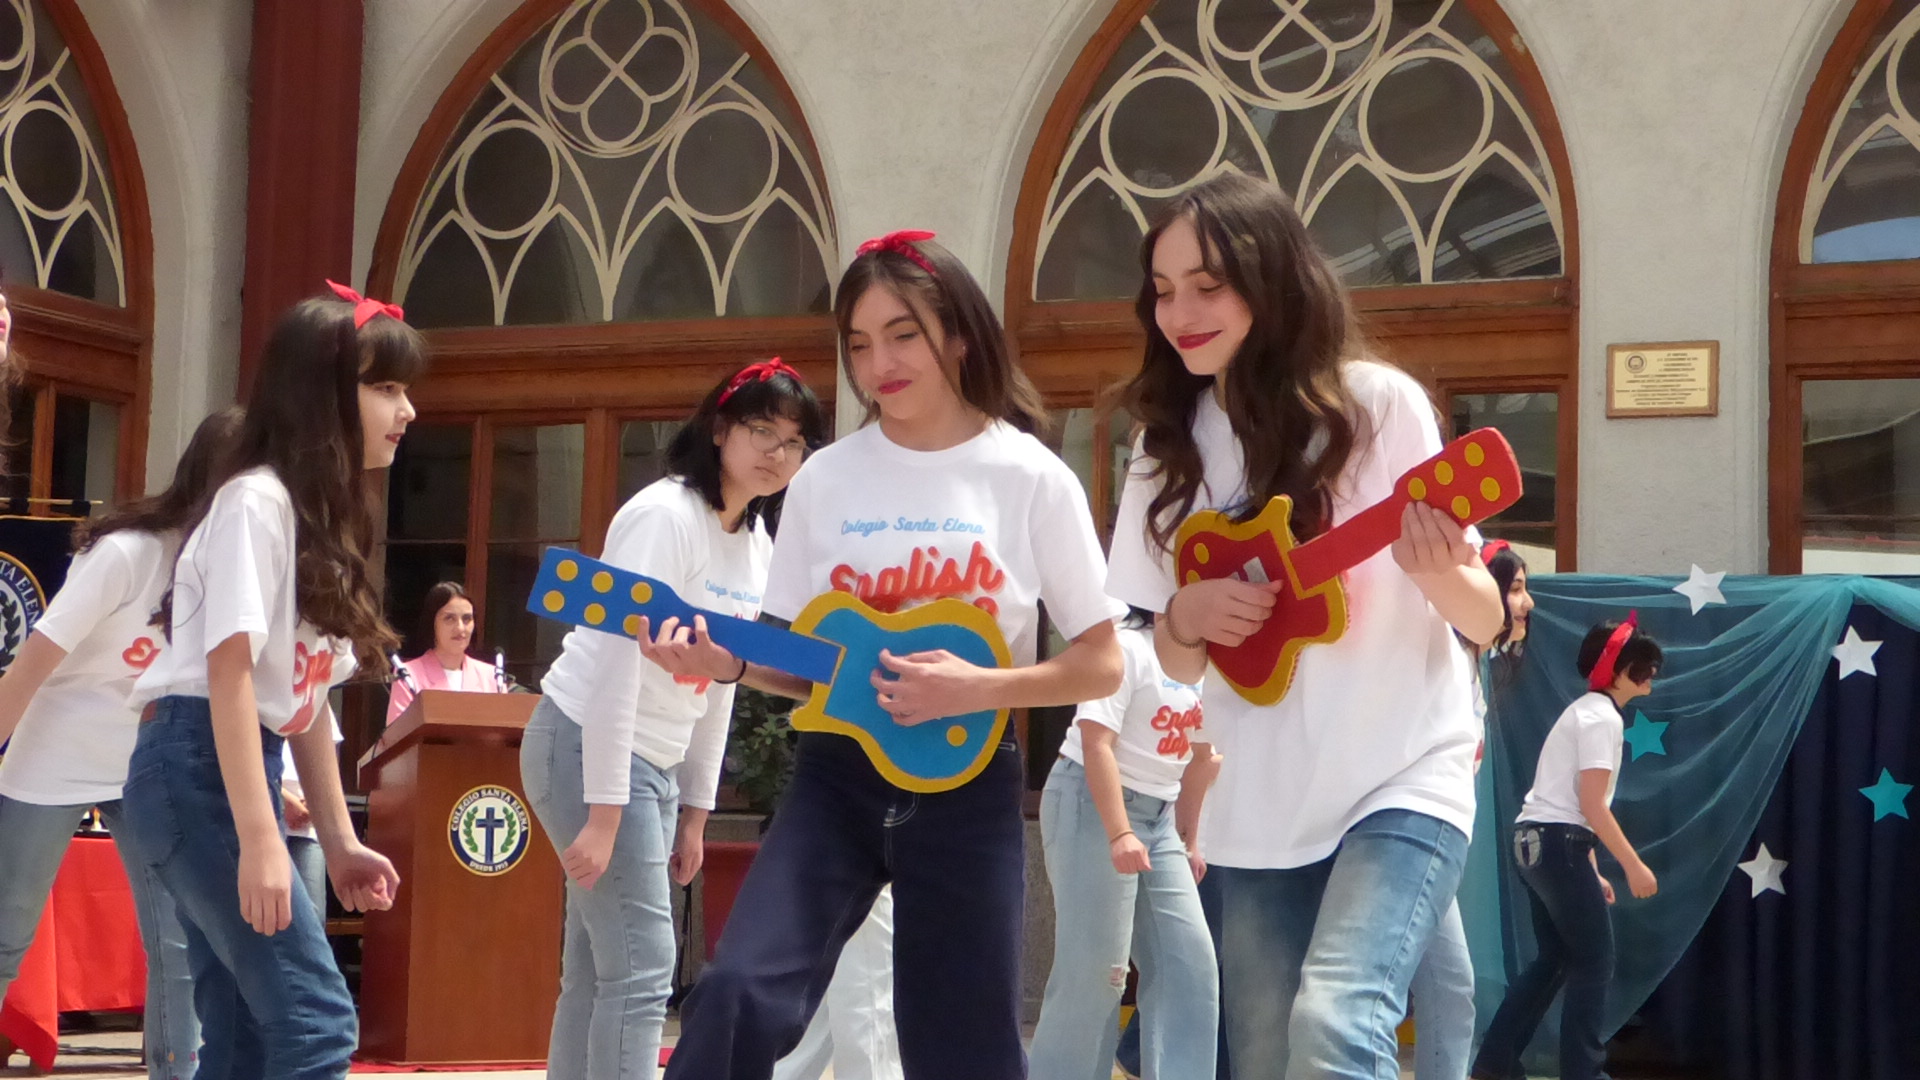 Celebrando el English Day en el Colegio Santa Elena: Un Día de Amor, Alegría y Aprendizaje